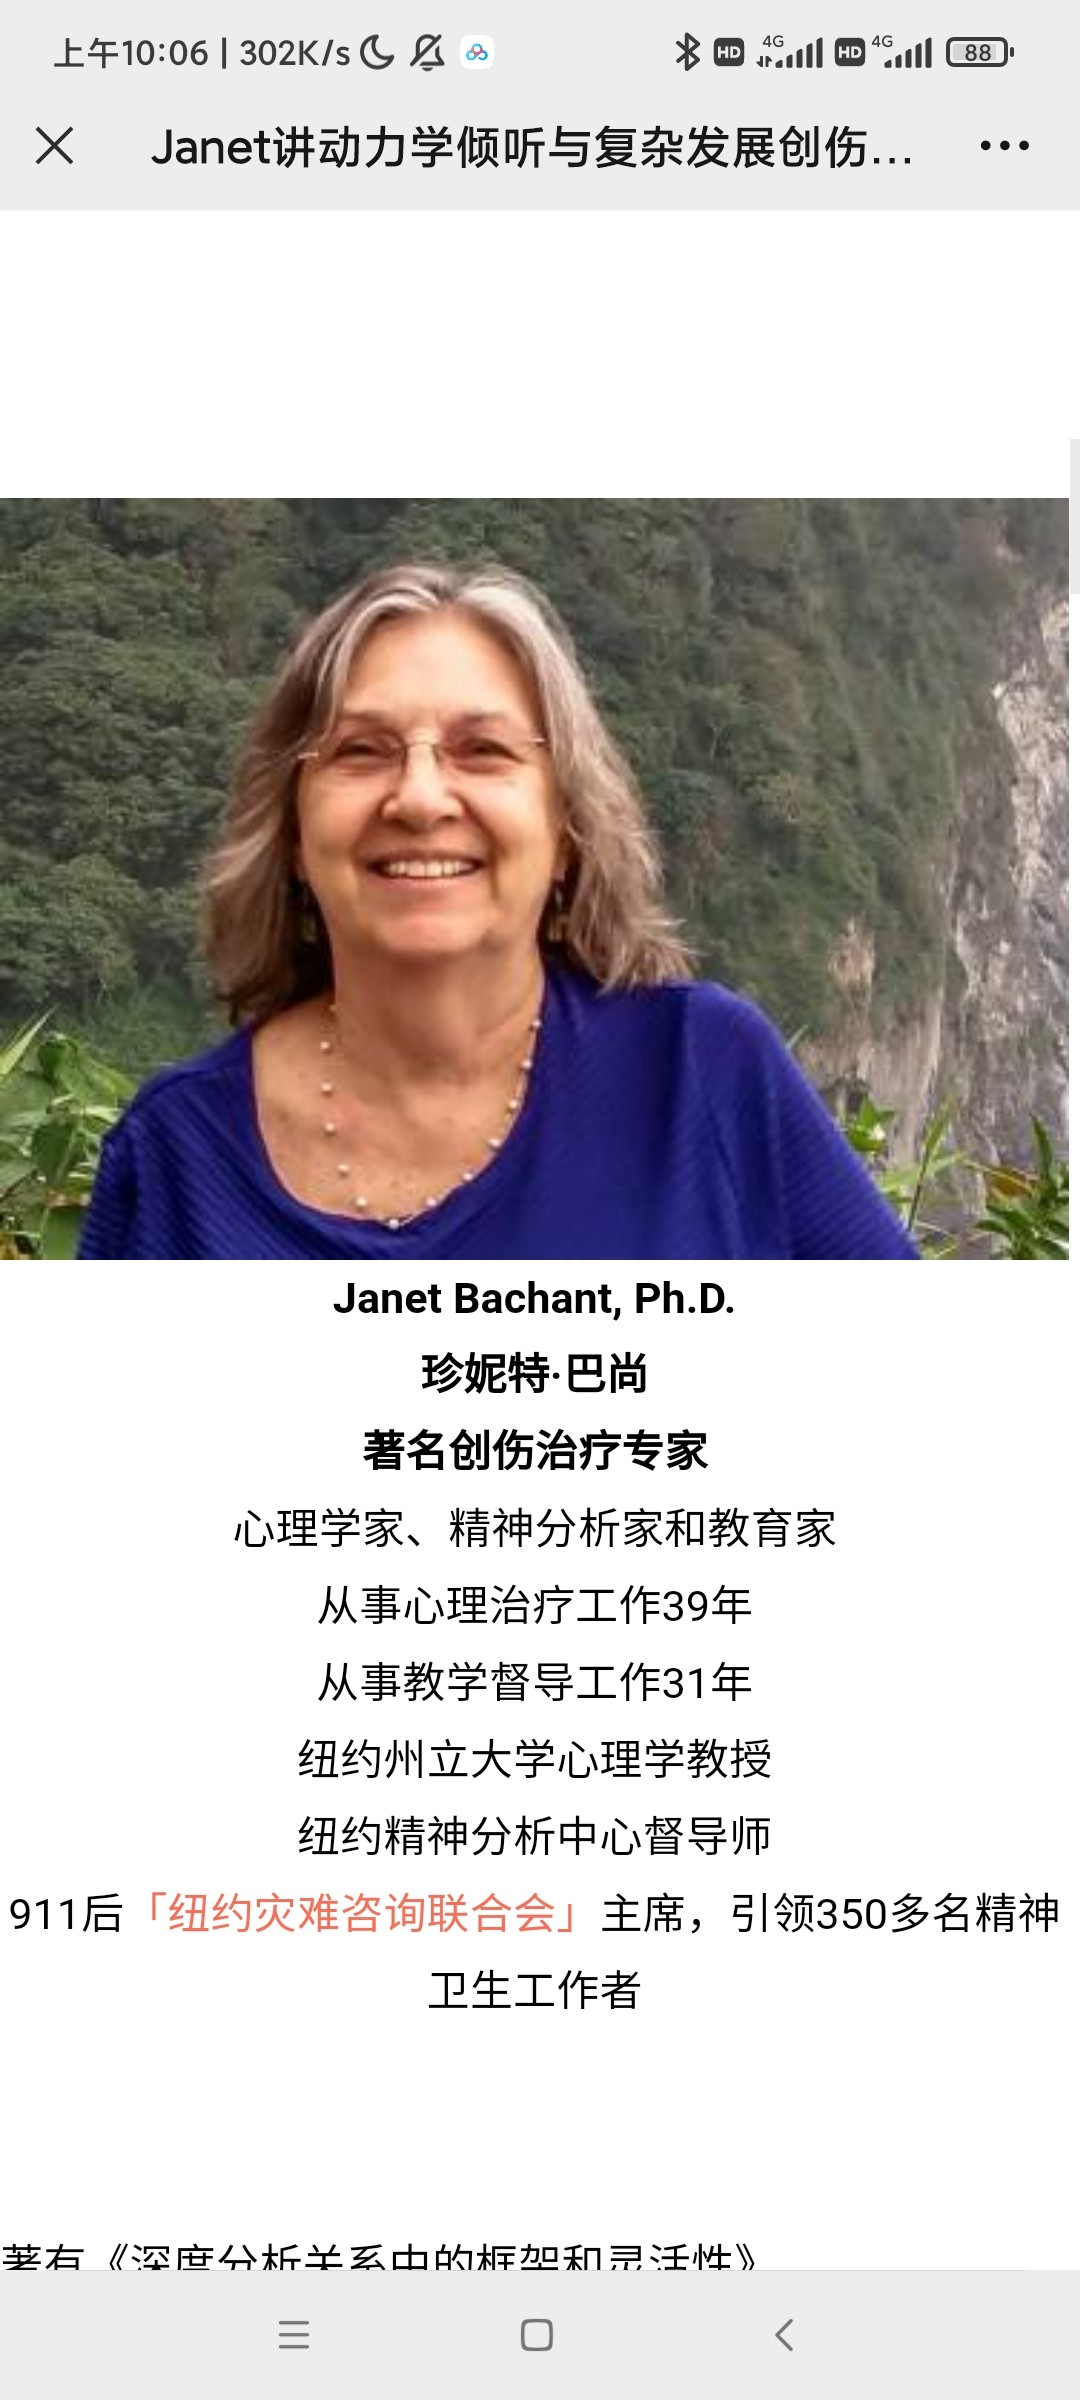 【完结】Janet讲动力学倾听与复杂发展创伤的治疗应用（18堂） 视频+文稿